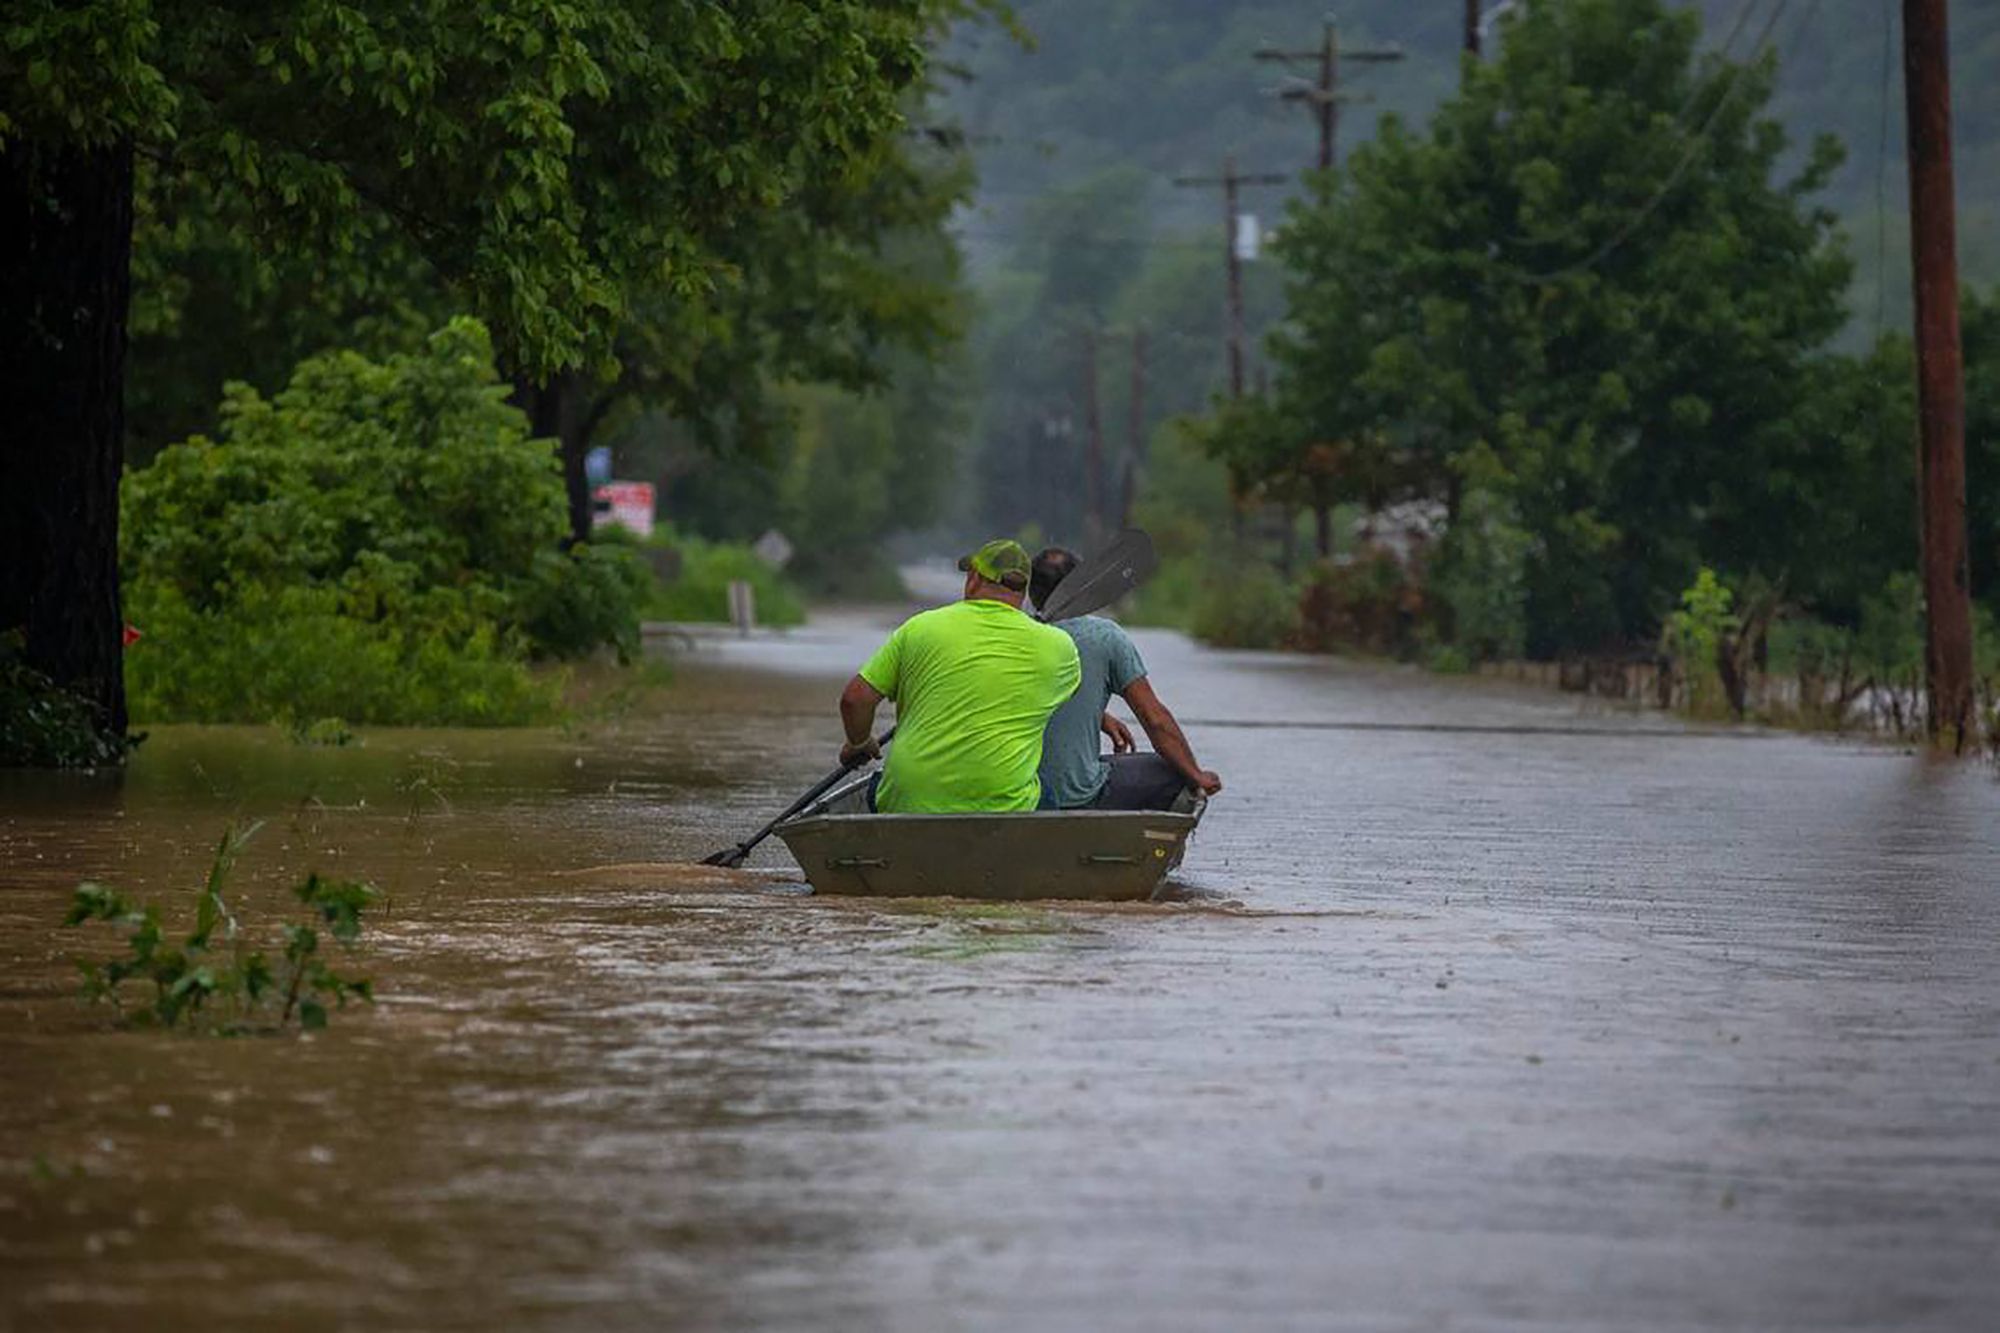 inundacions kentucky eeuu eua estats units america morts